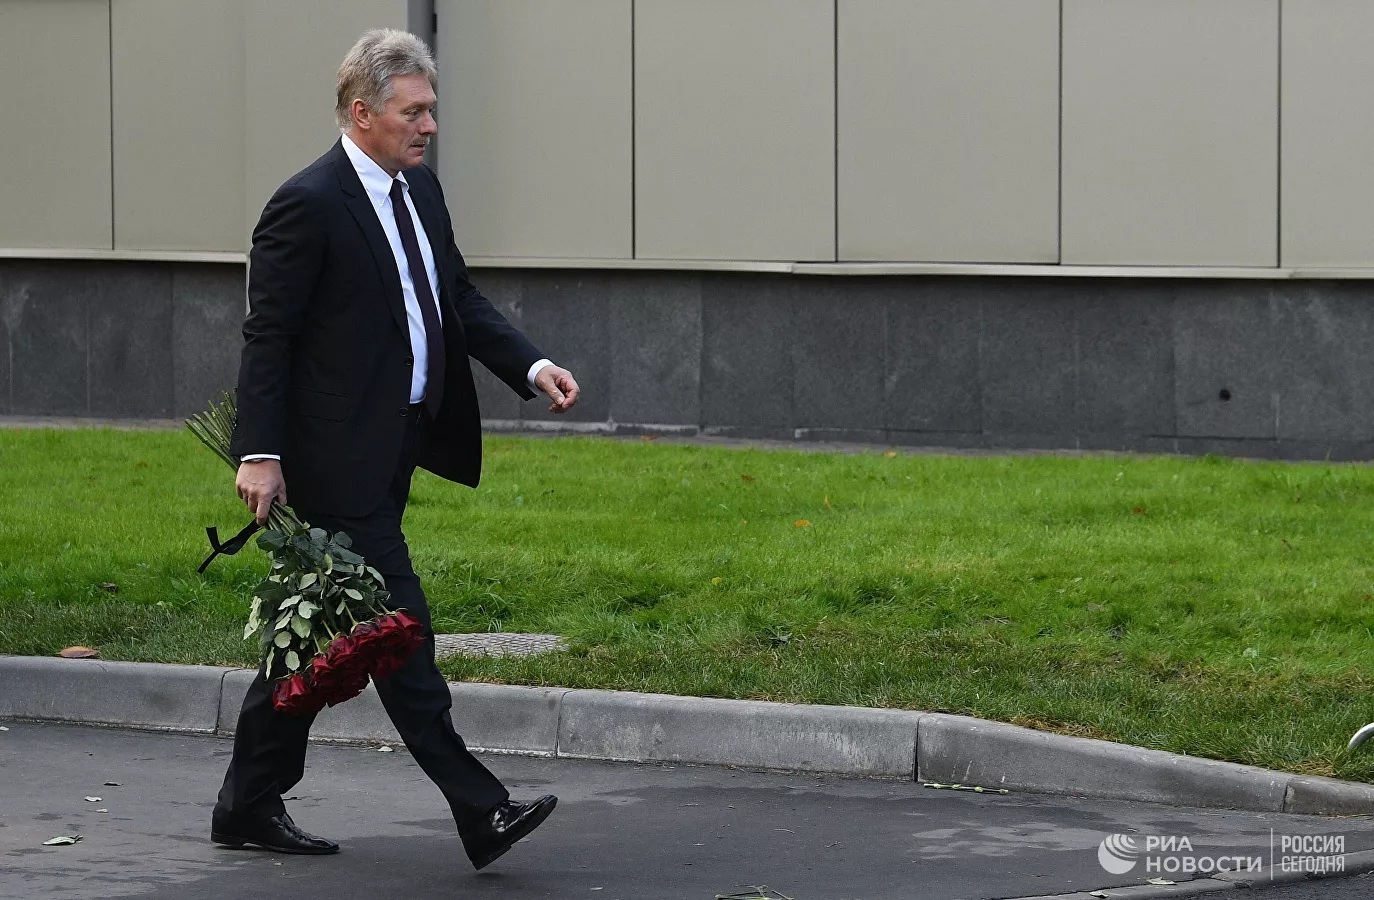 Khoảnh khắc xúc động ông Putin tiễn biệt Bộ trưởng Bộ Tình trạng khẩn cấp Nga